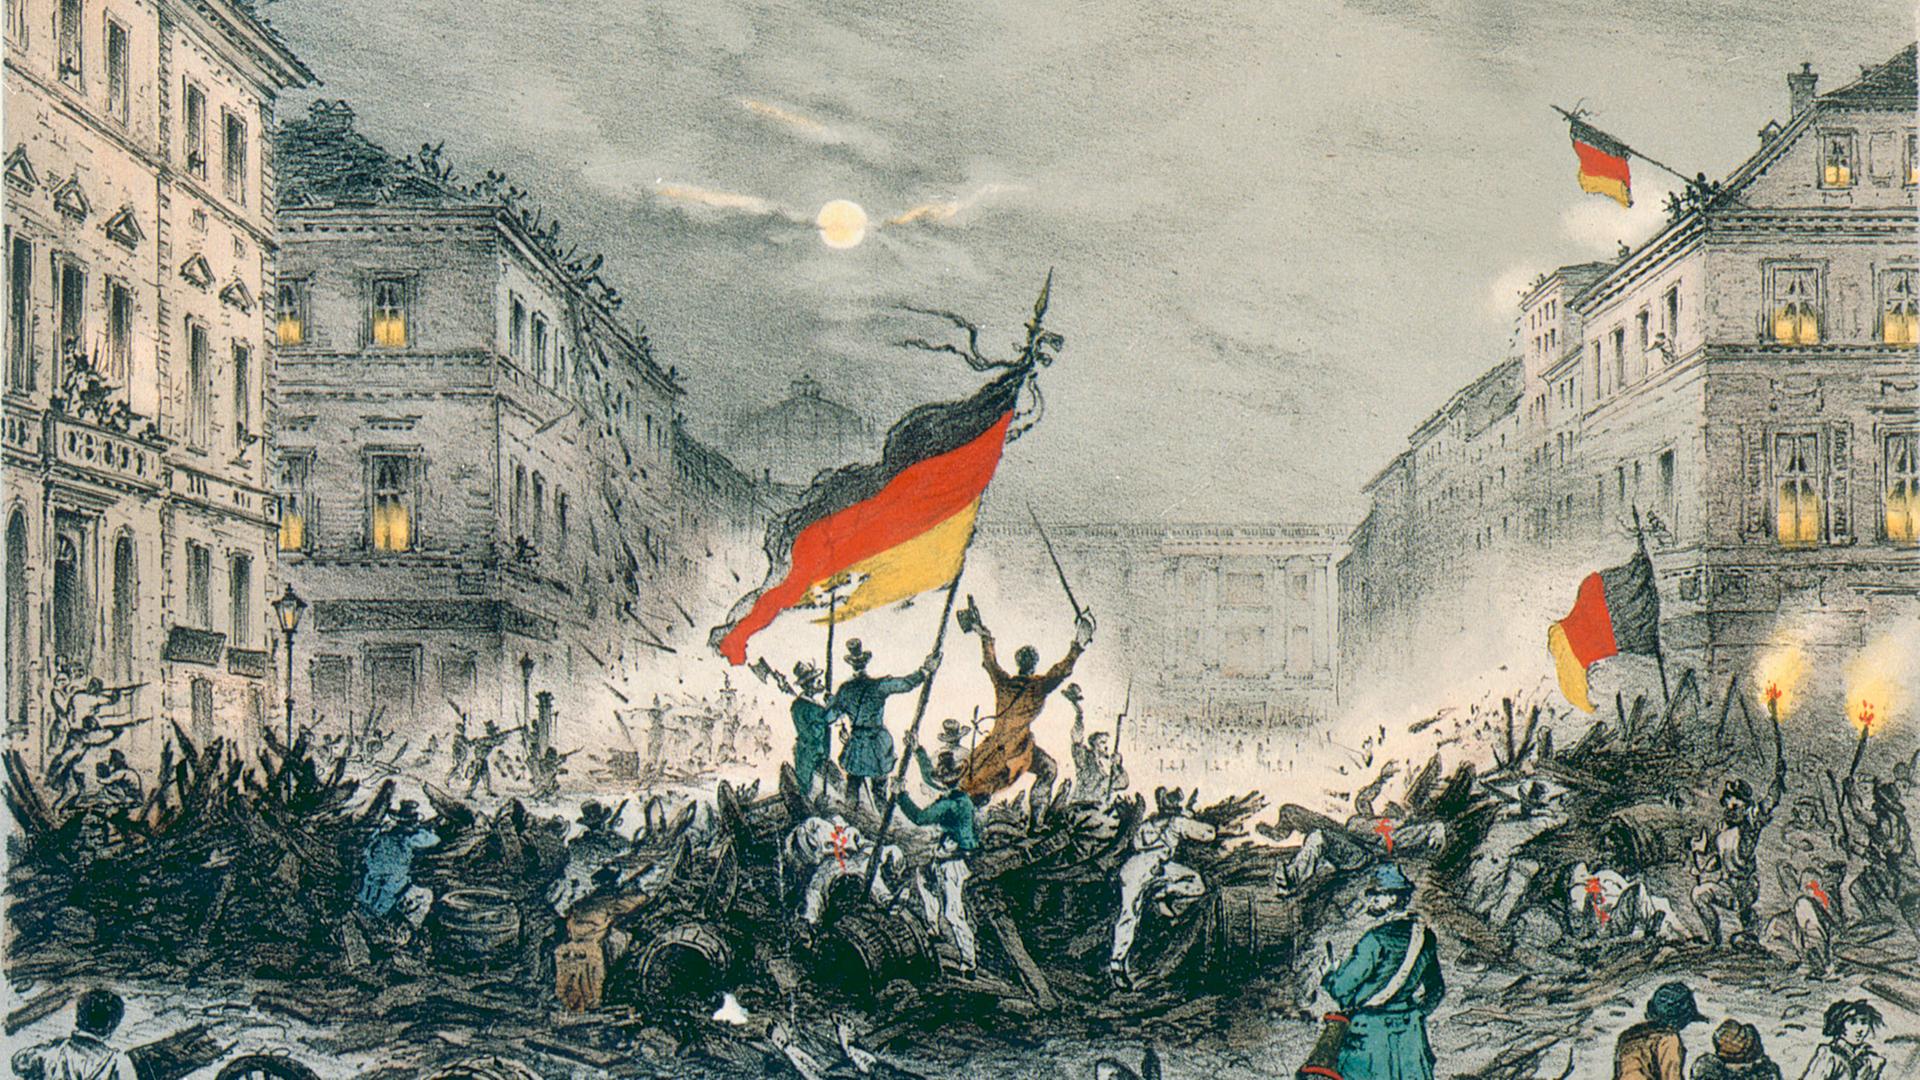 Märzrevolution - Steinmeier und Roth würdigen Vermächtnis von 1848: "Geist der Freiheit in die Welt gesetzt"